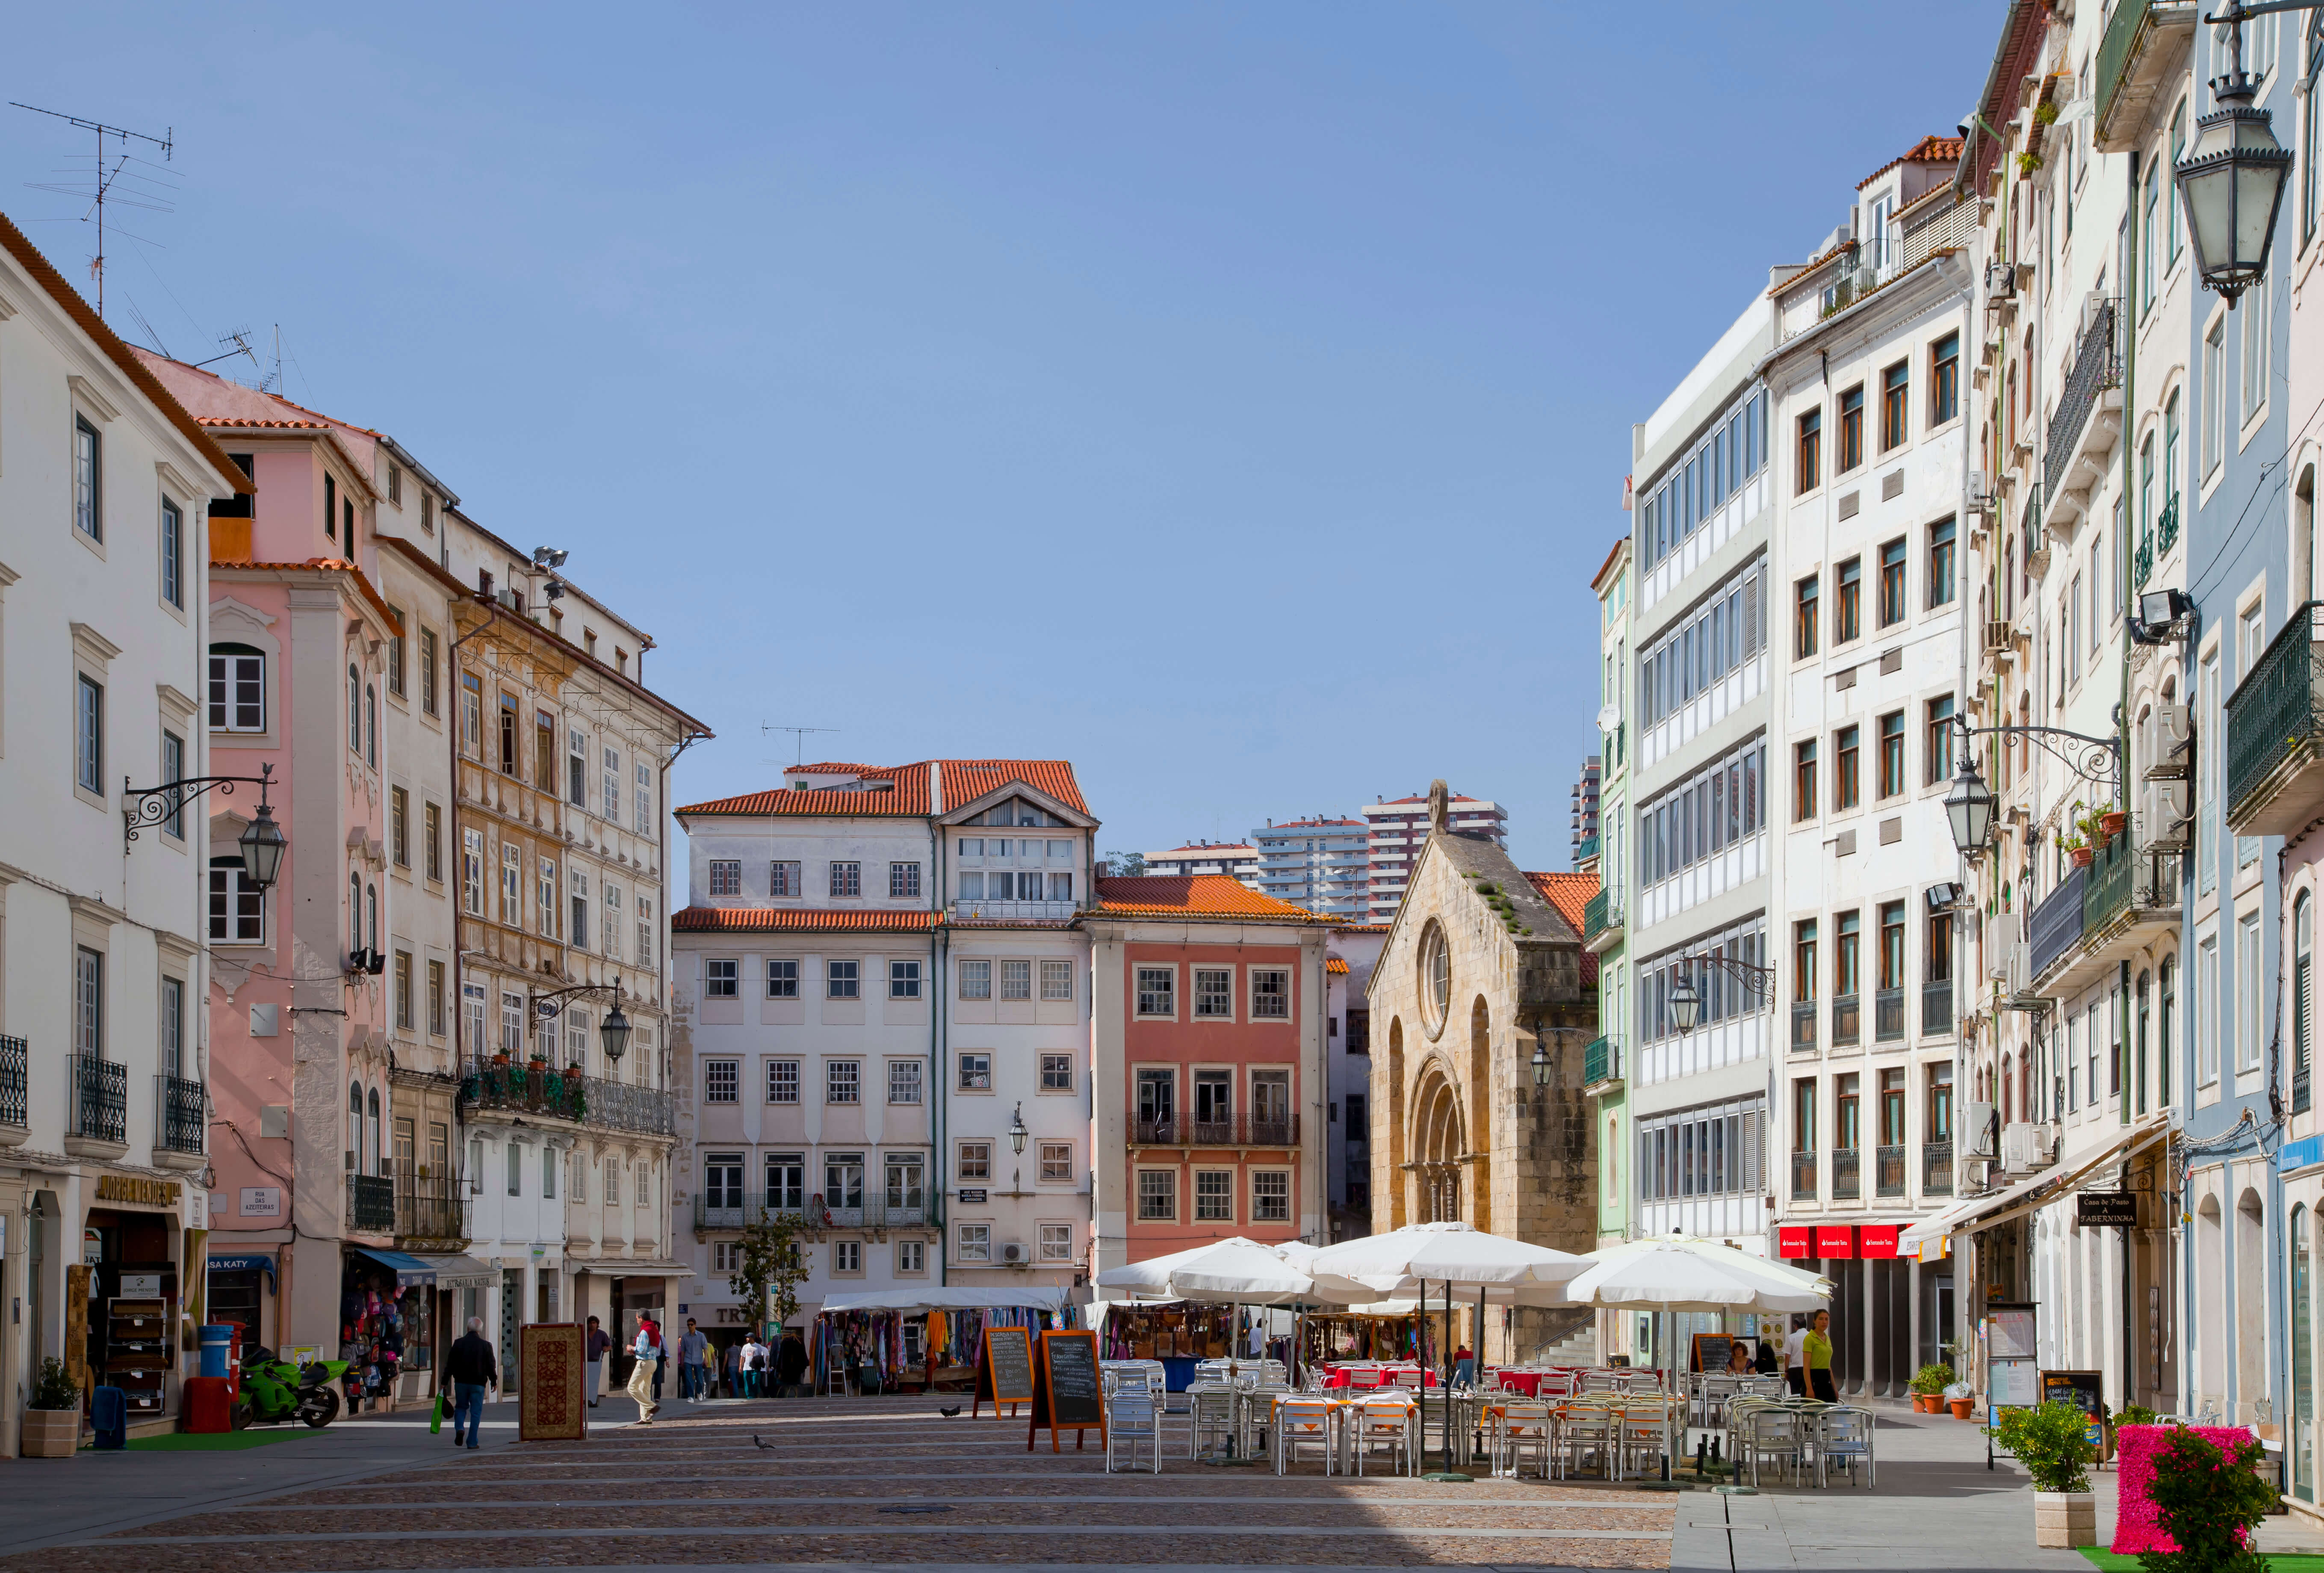 Le centre historique de Coimbra en plein hiver. Vous avez vu ce beau ciel bleu ?